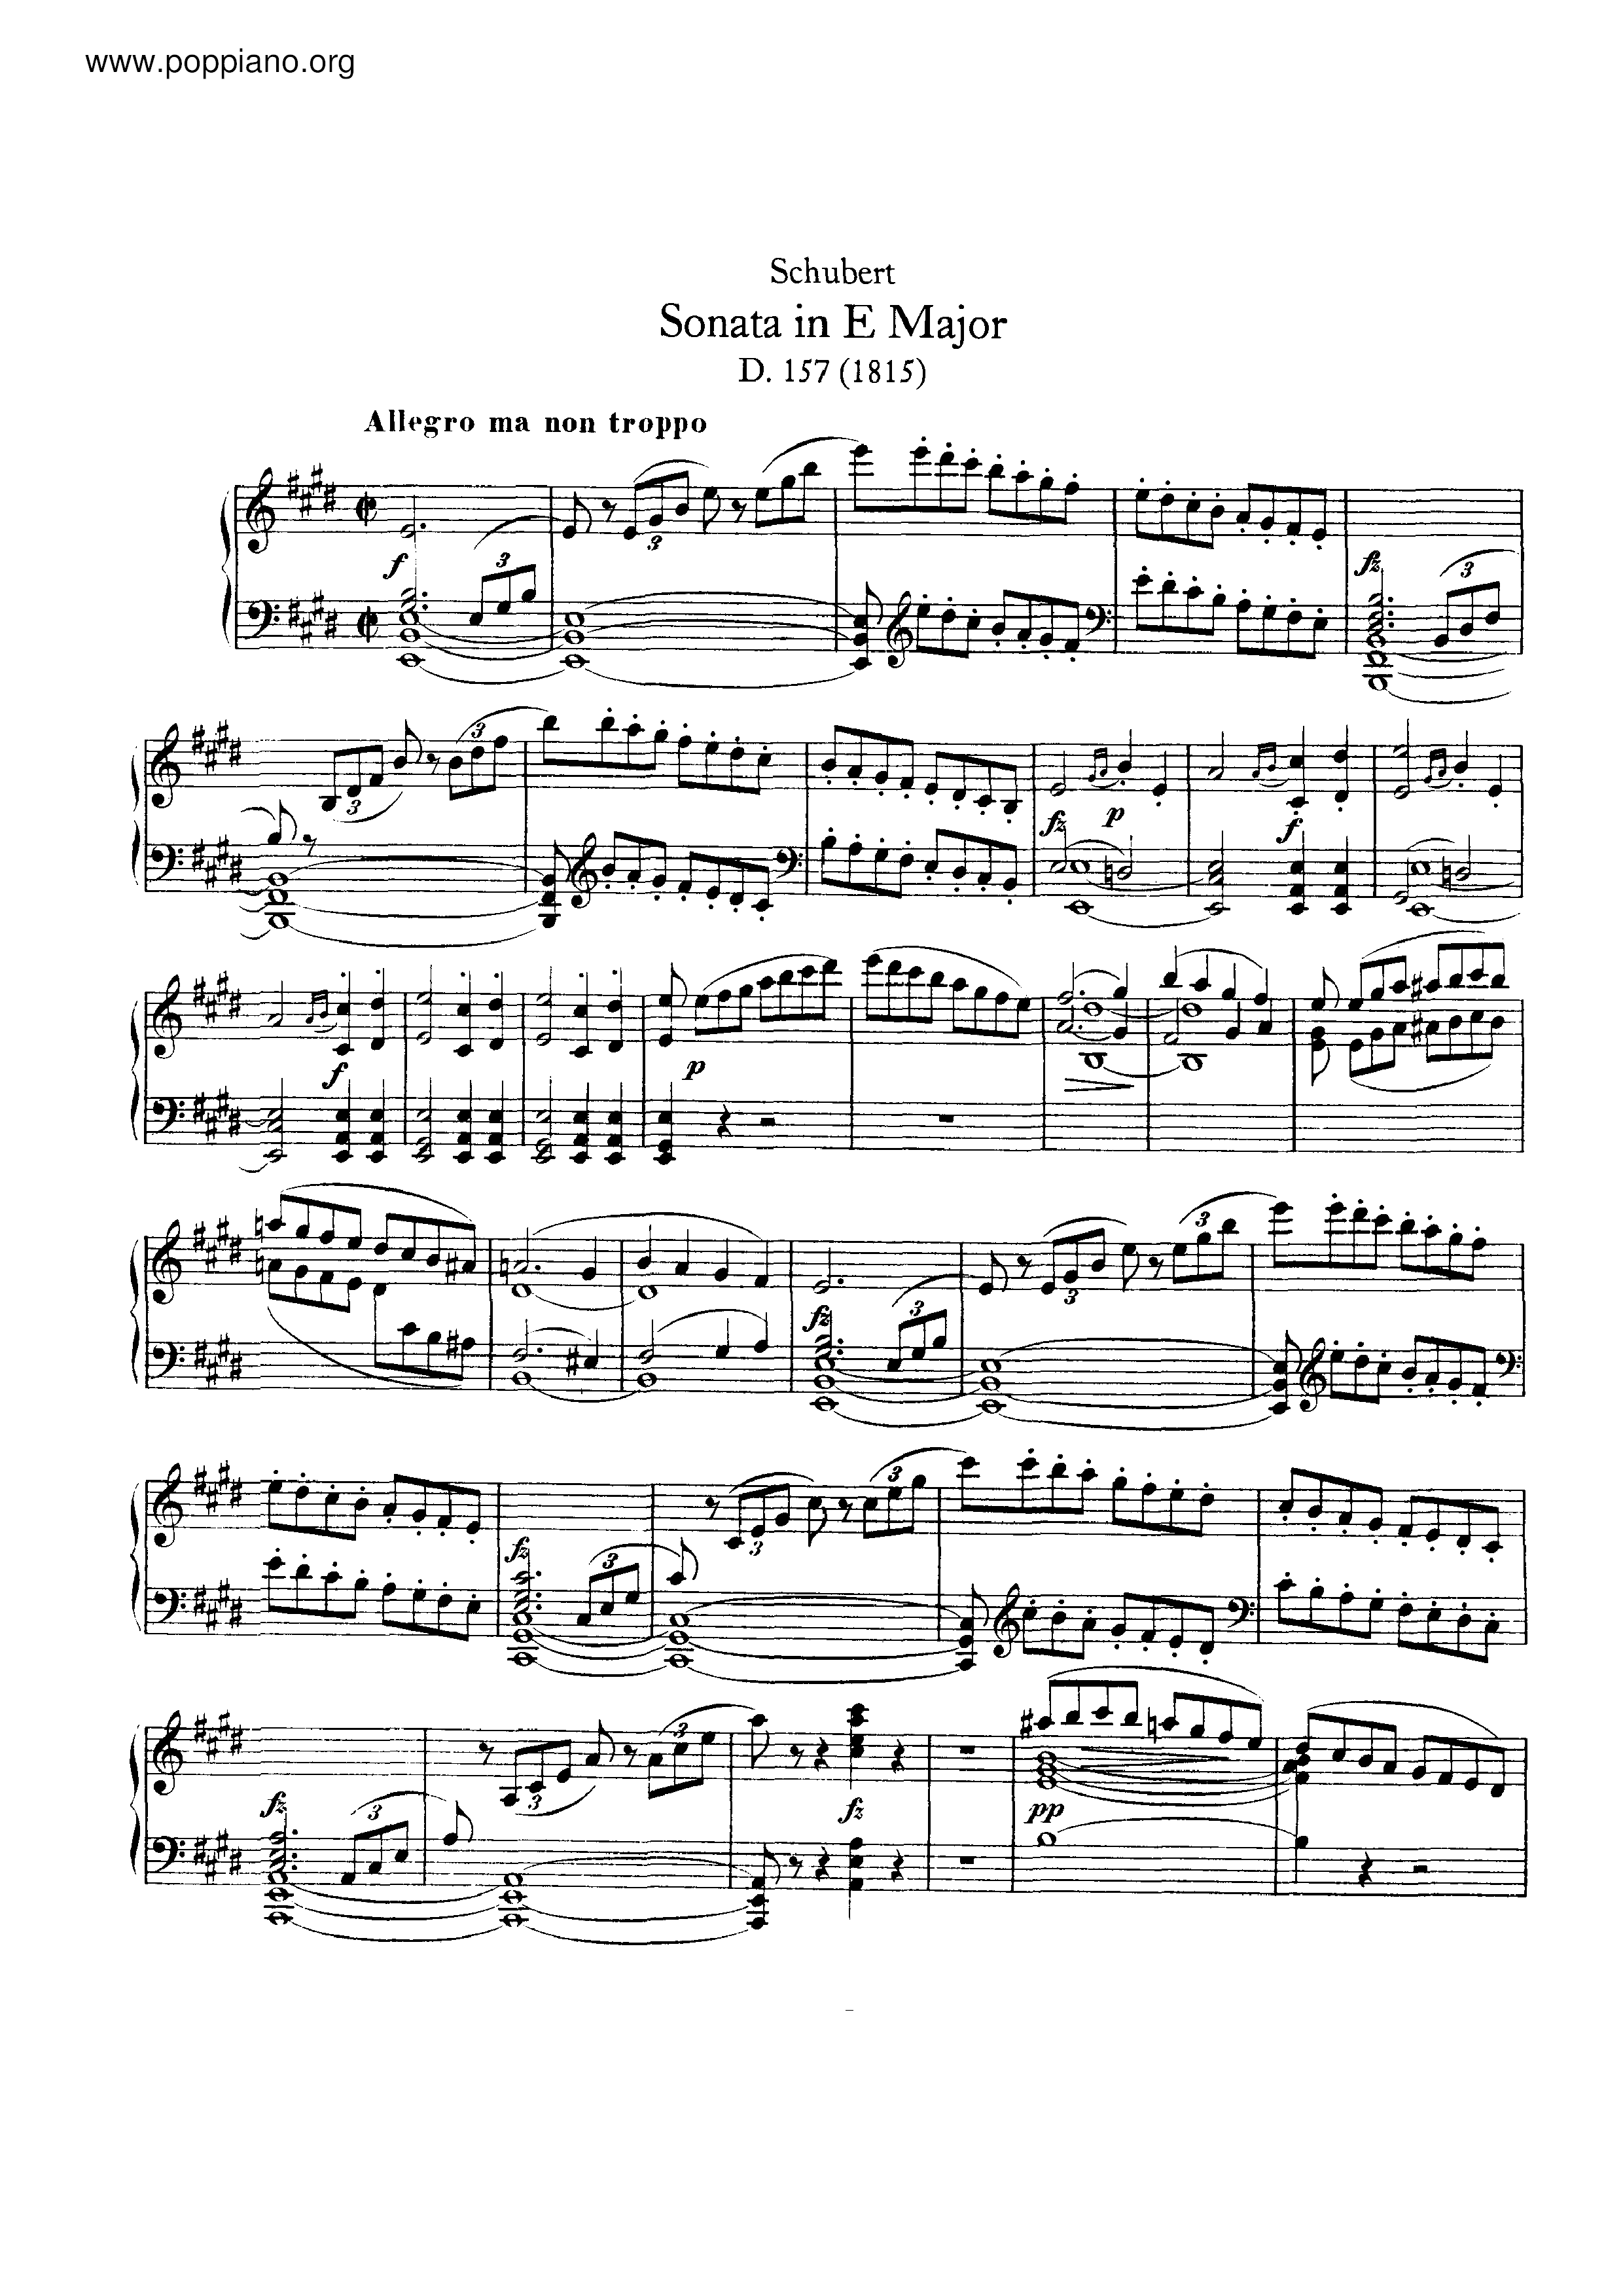 Piano Sonata in E major, D.157 Score